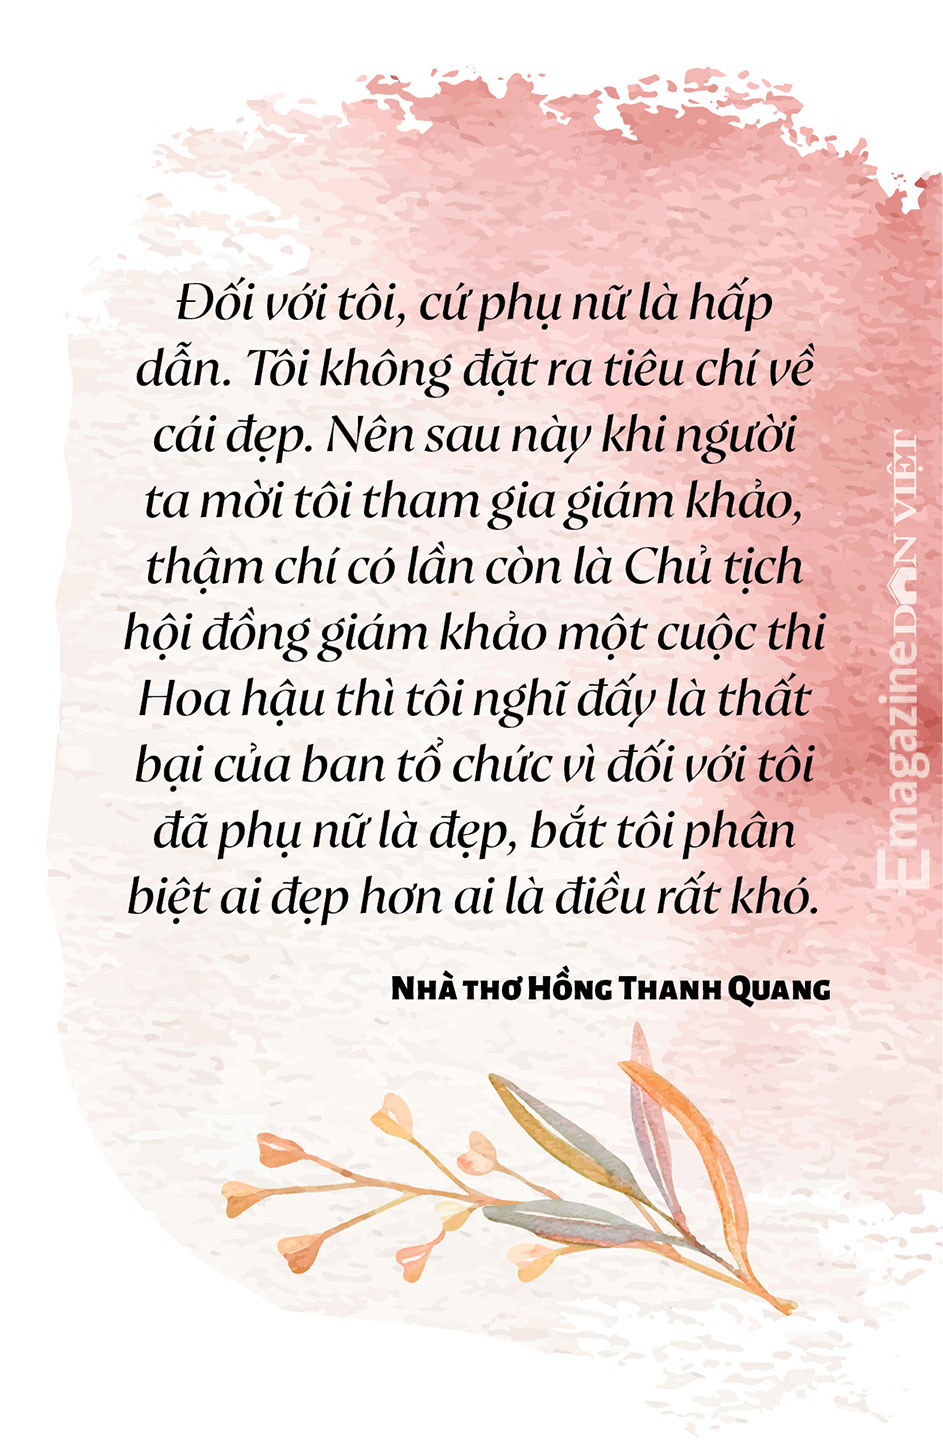 Trò chuyện giữa nhà báo Lưu Quang Định và nhà thơ,  nhà báo Hồng Thanh Quang: Về Thơ, Tình yêu và Cuộc đời - Ảnh 3.